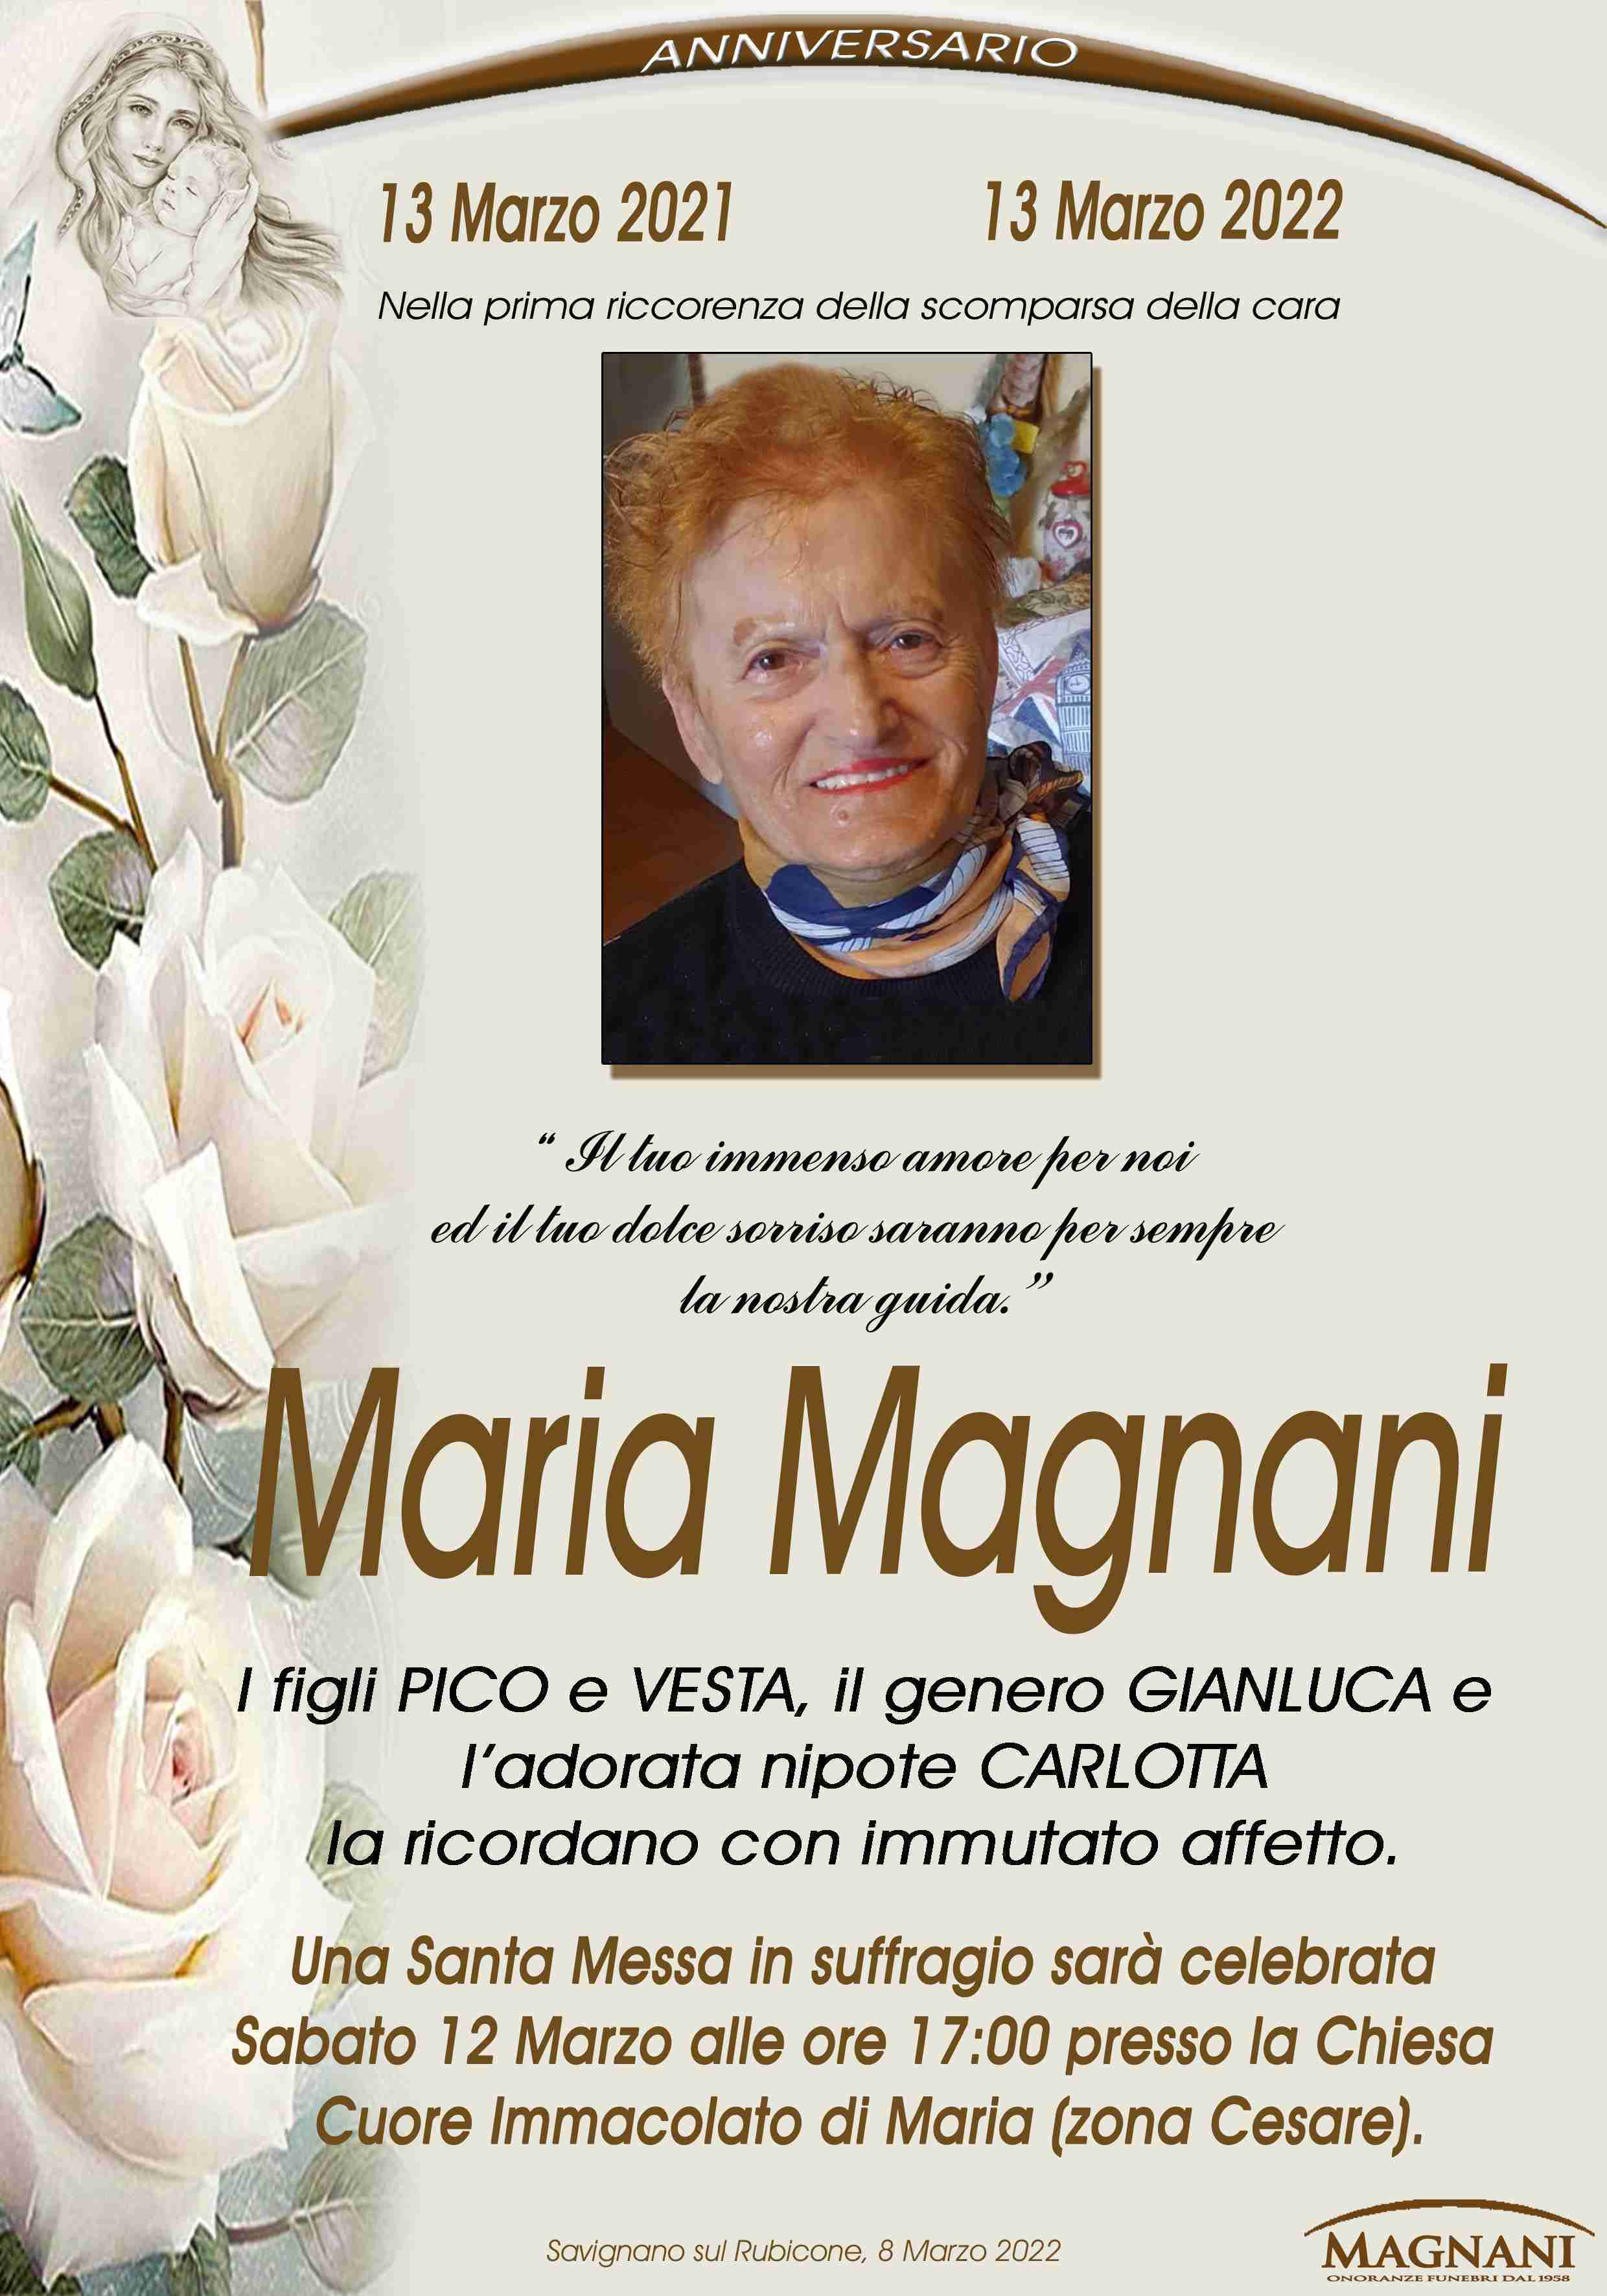 Maria Magnani